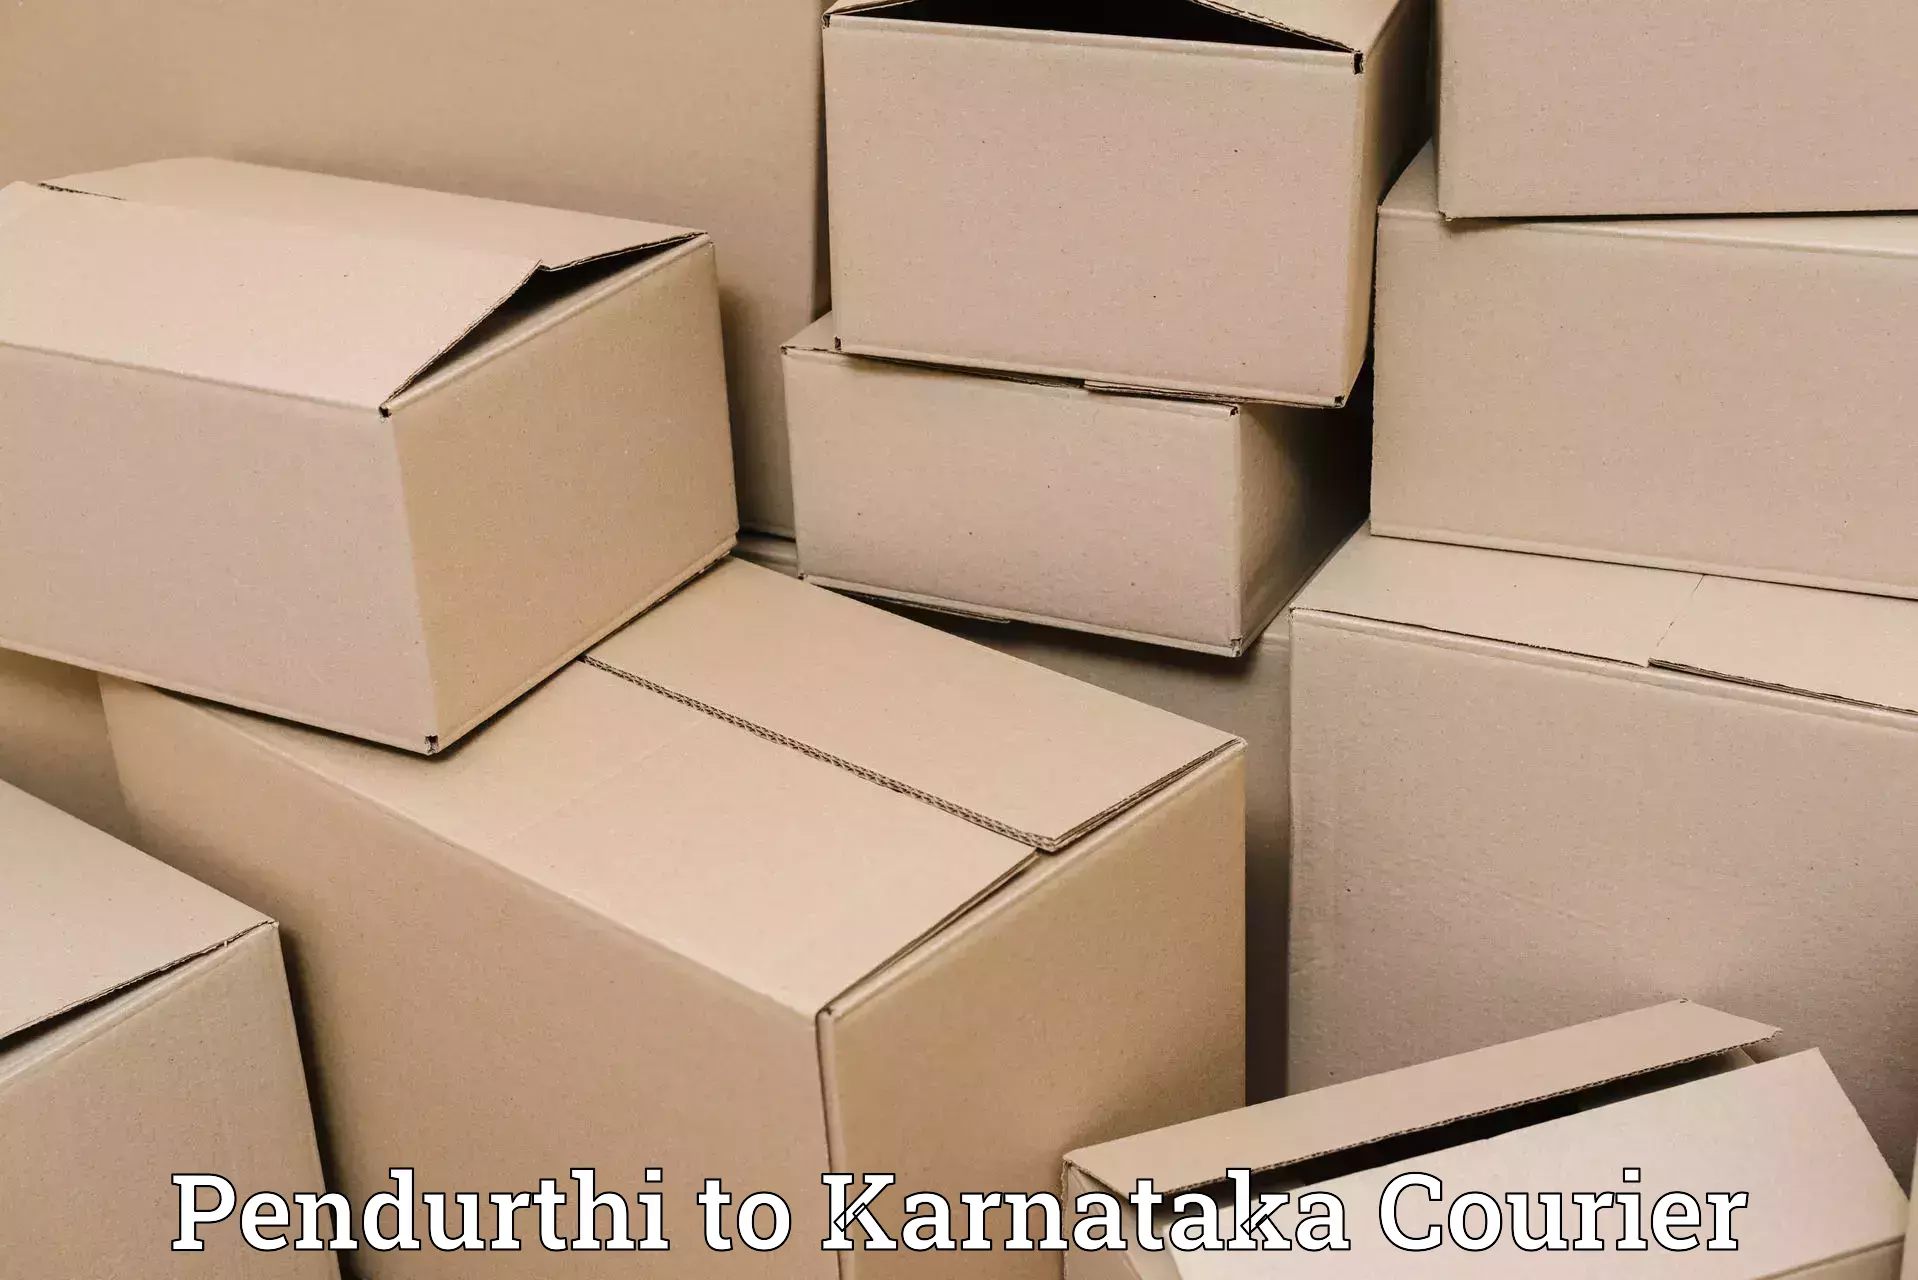 Pharmaceutical courier Pendurthi to Kalaghatgi